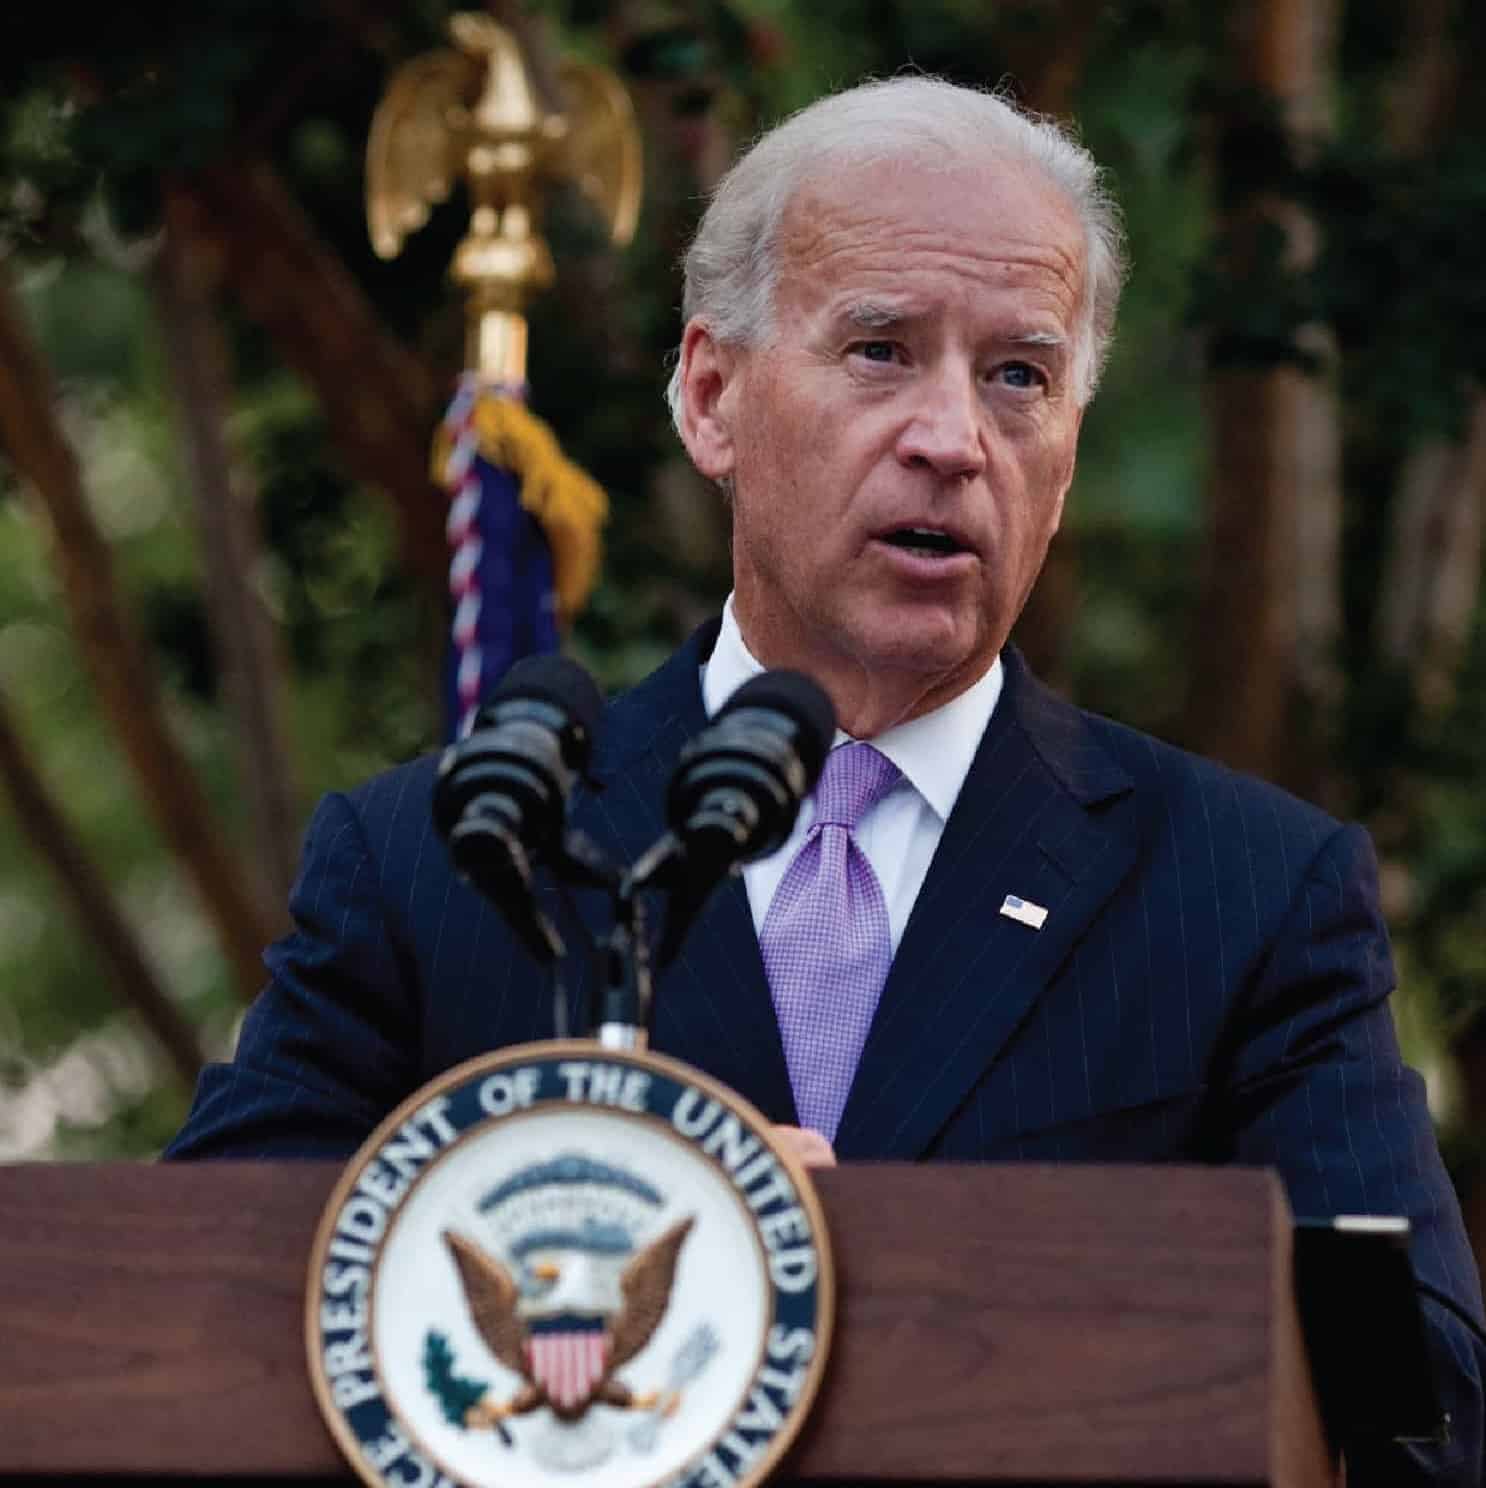 Joe Biden speaking behind a podium